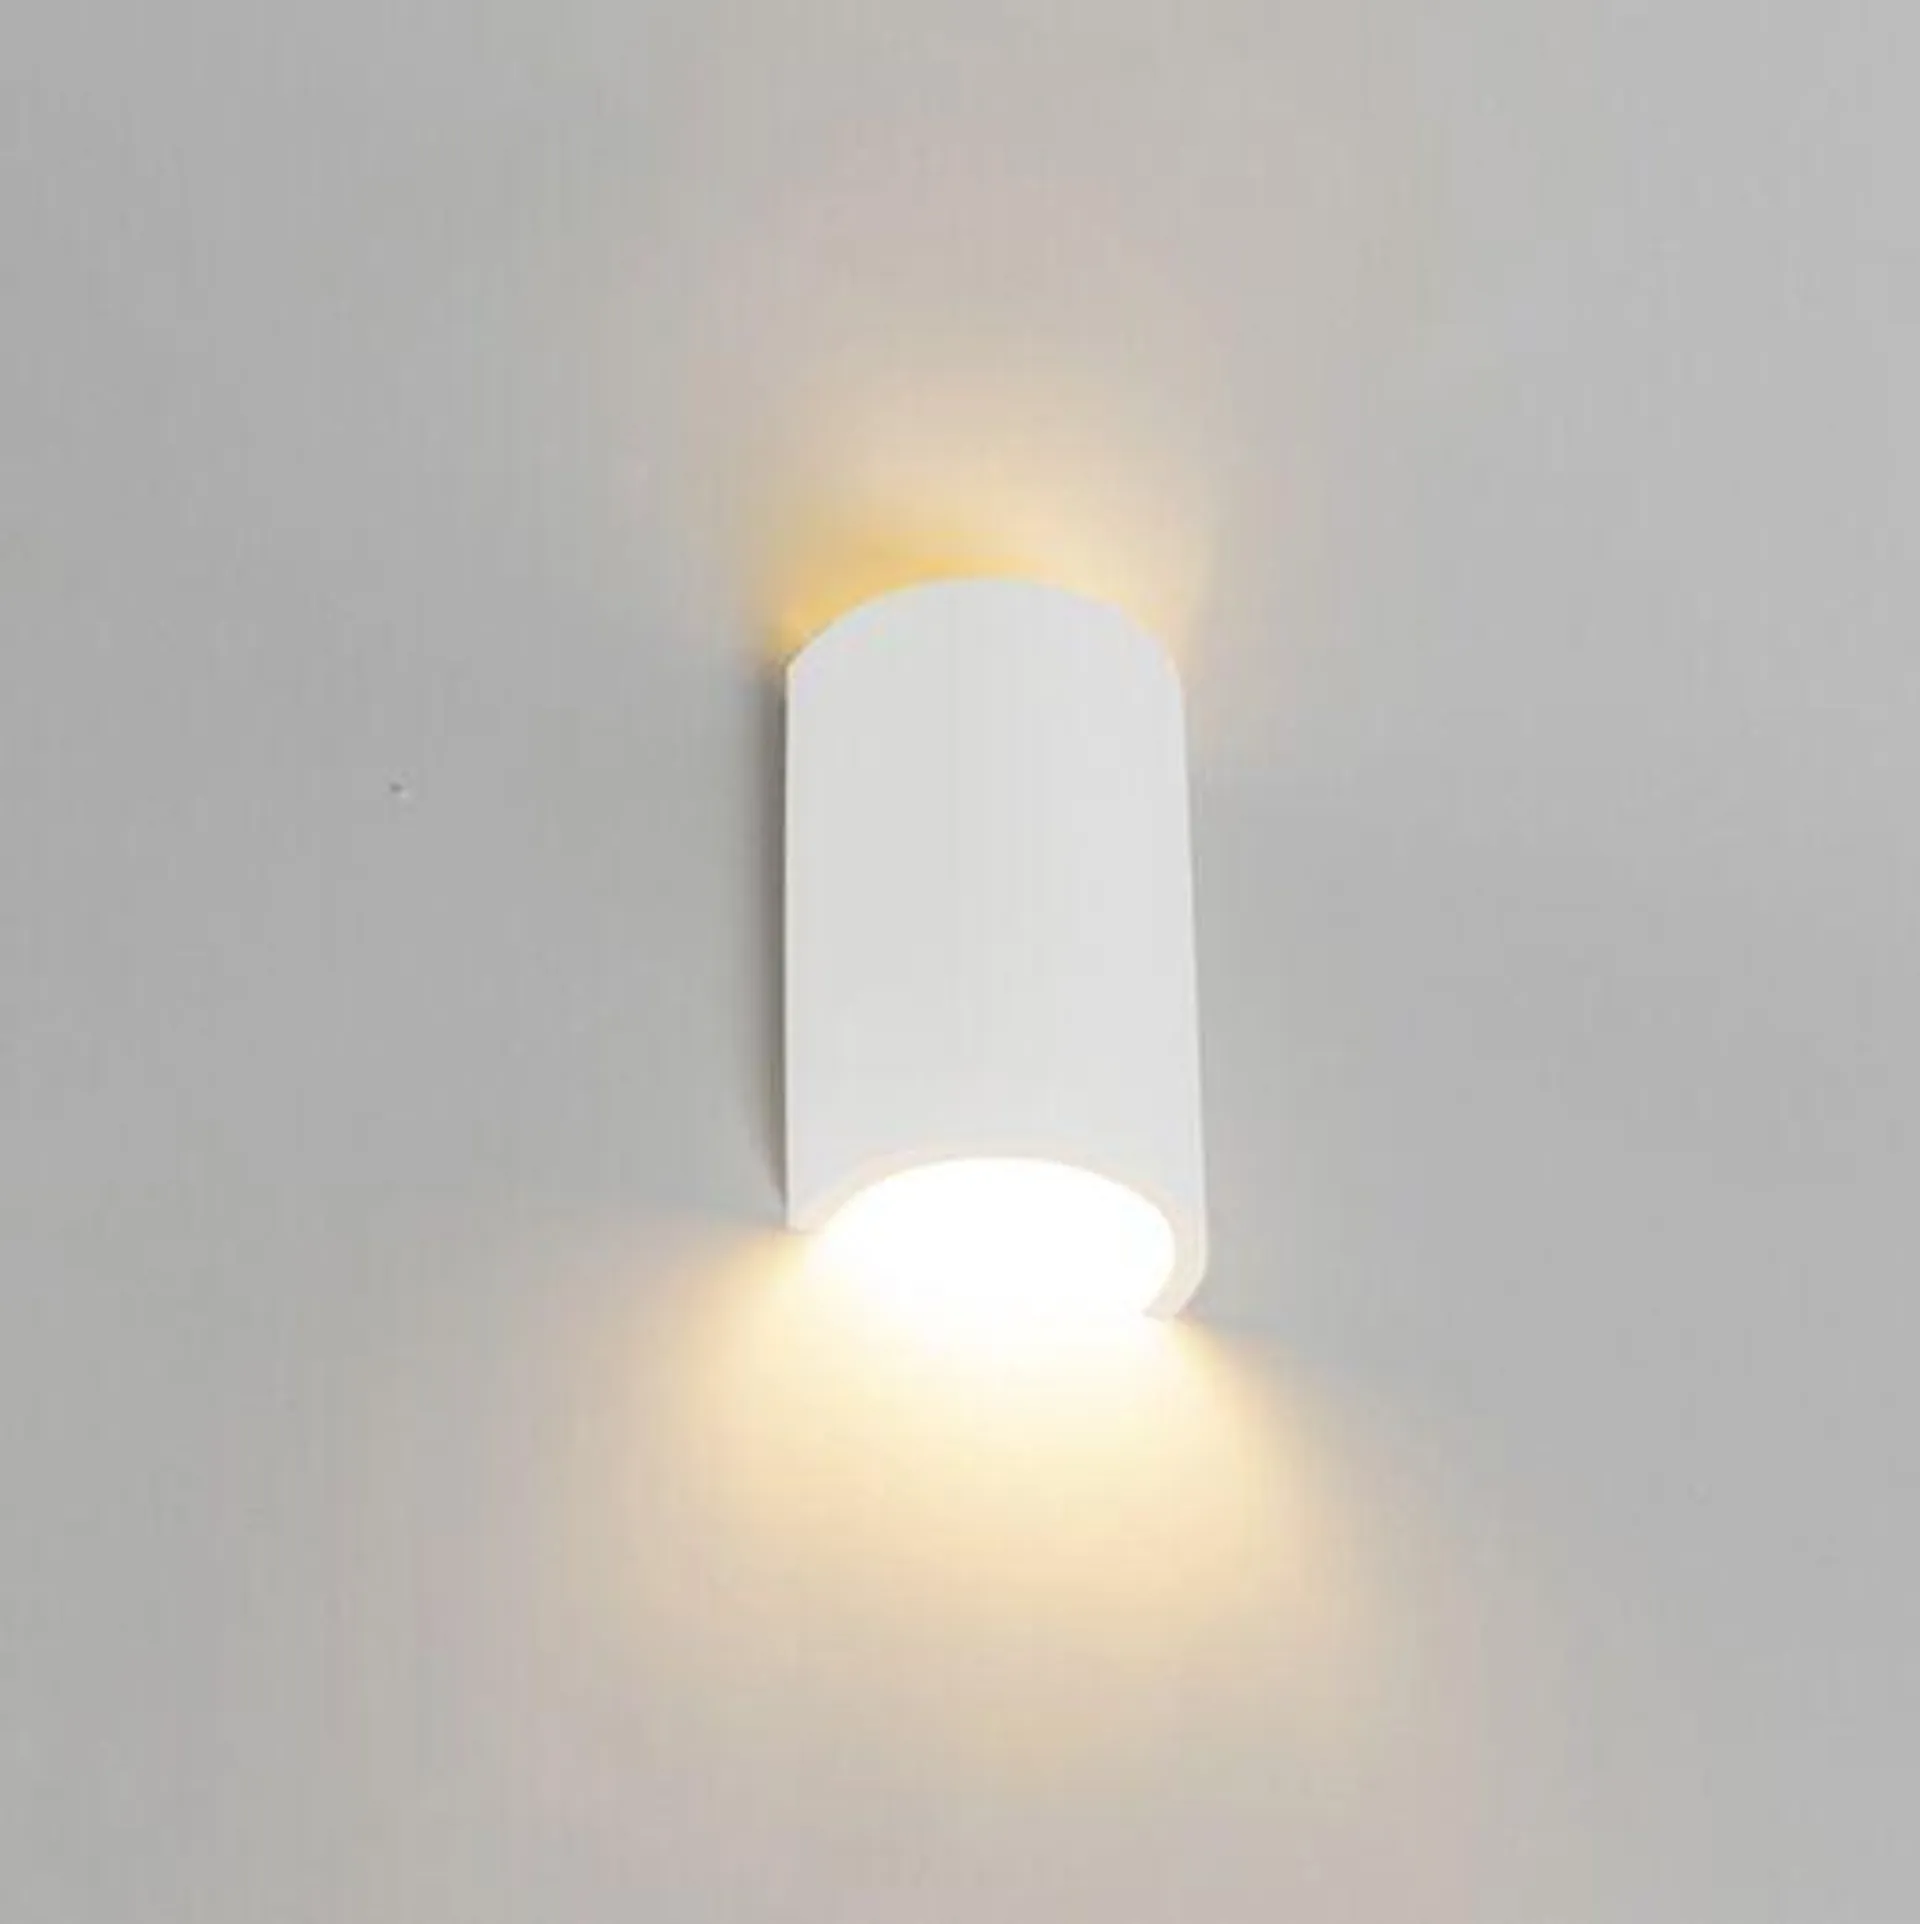 Moderne wandlamp wit - Colja Novo